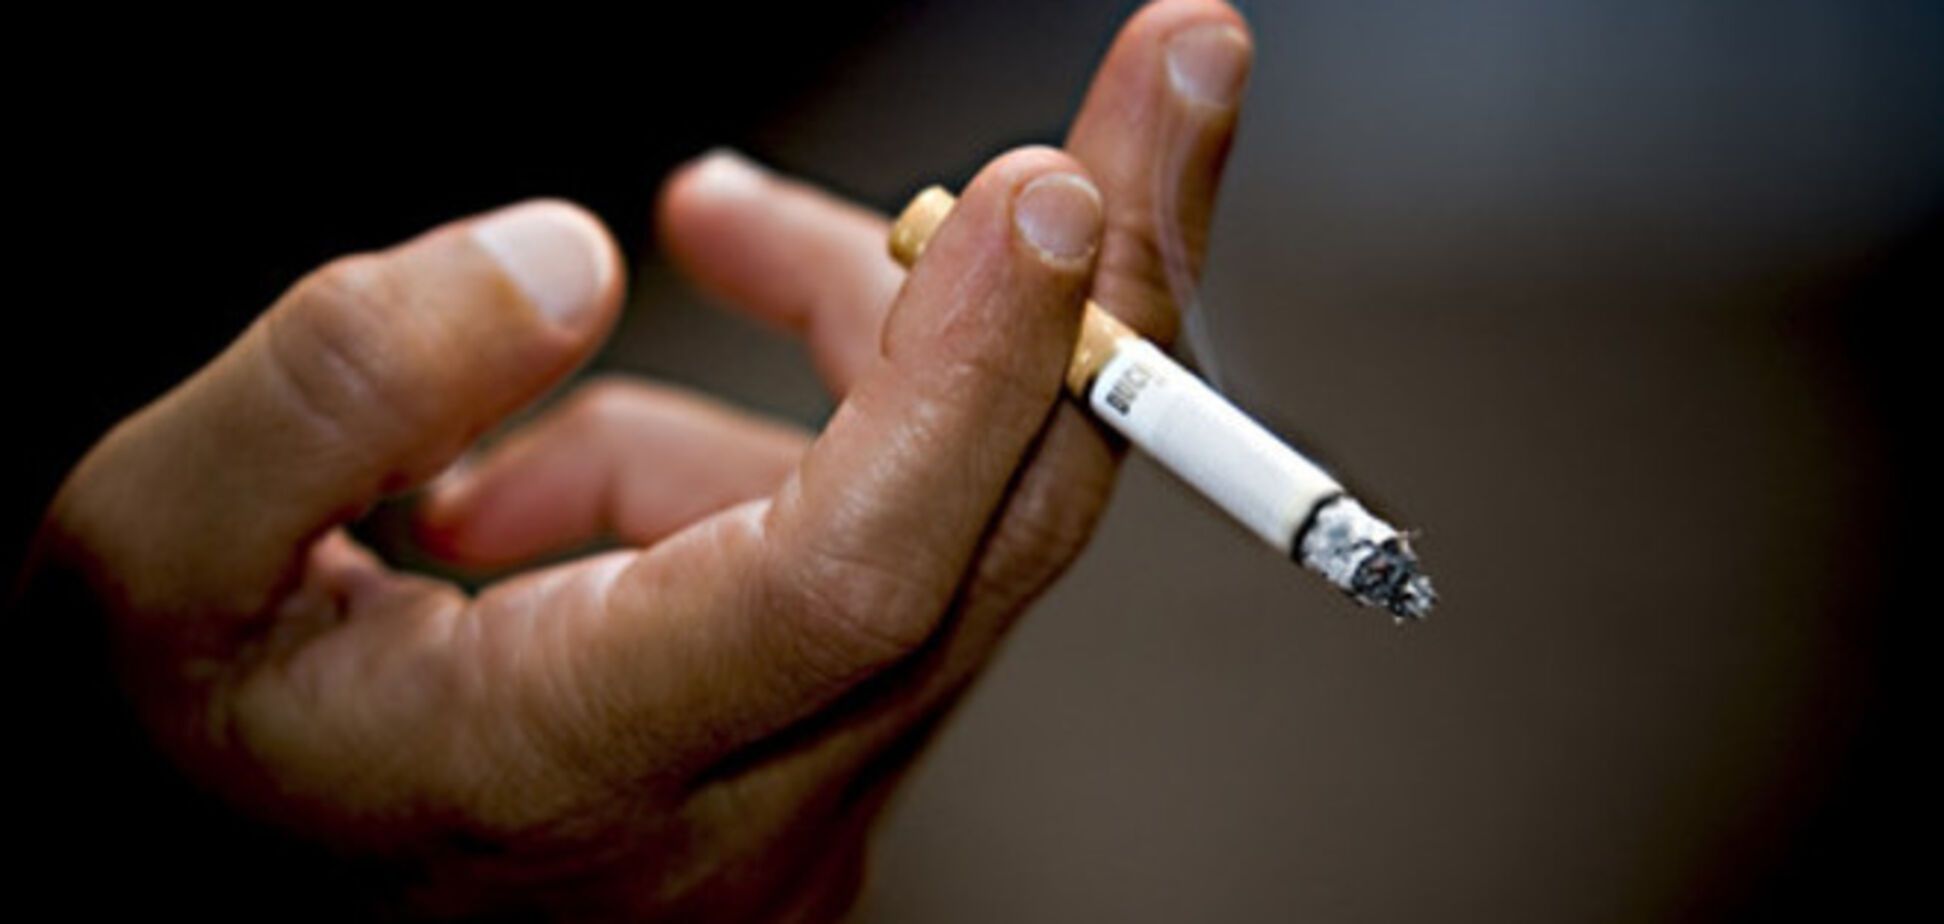 Ученые назвали ситуацию, когда нельзя бросать курить